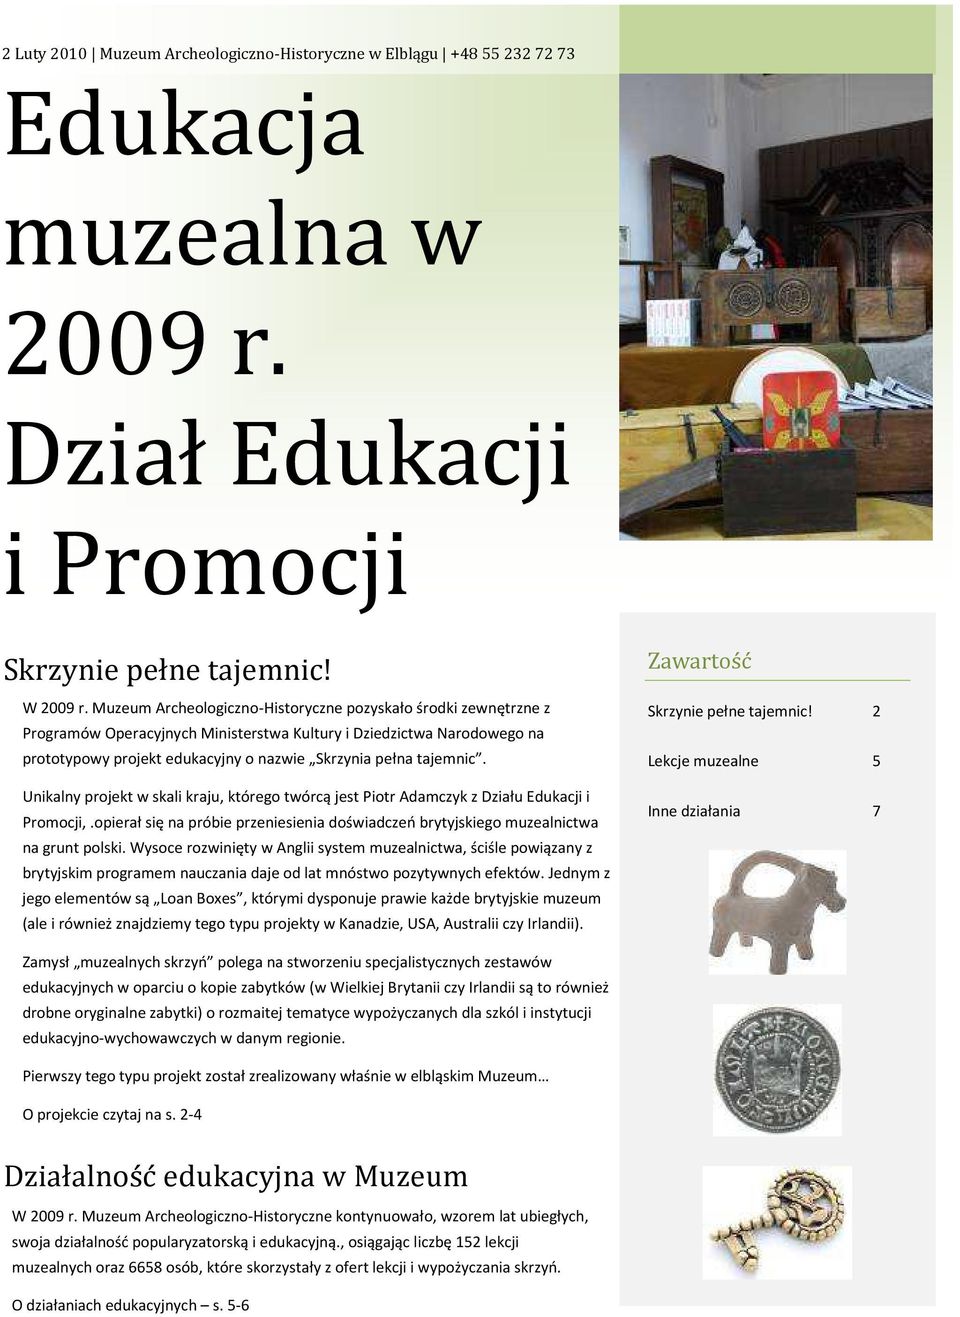 Unikalny projekt w skali kraju, którego twórcą jest Piotr Adamczyk z Działu Edukacji i Promocji,.opierał się na próbie przeniesienia doświadczeń brytyjskiego muzealnictwa na grunt polski.